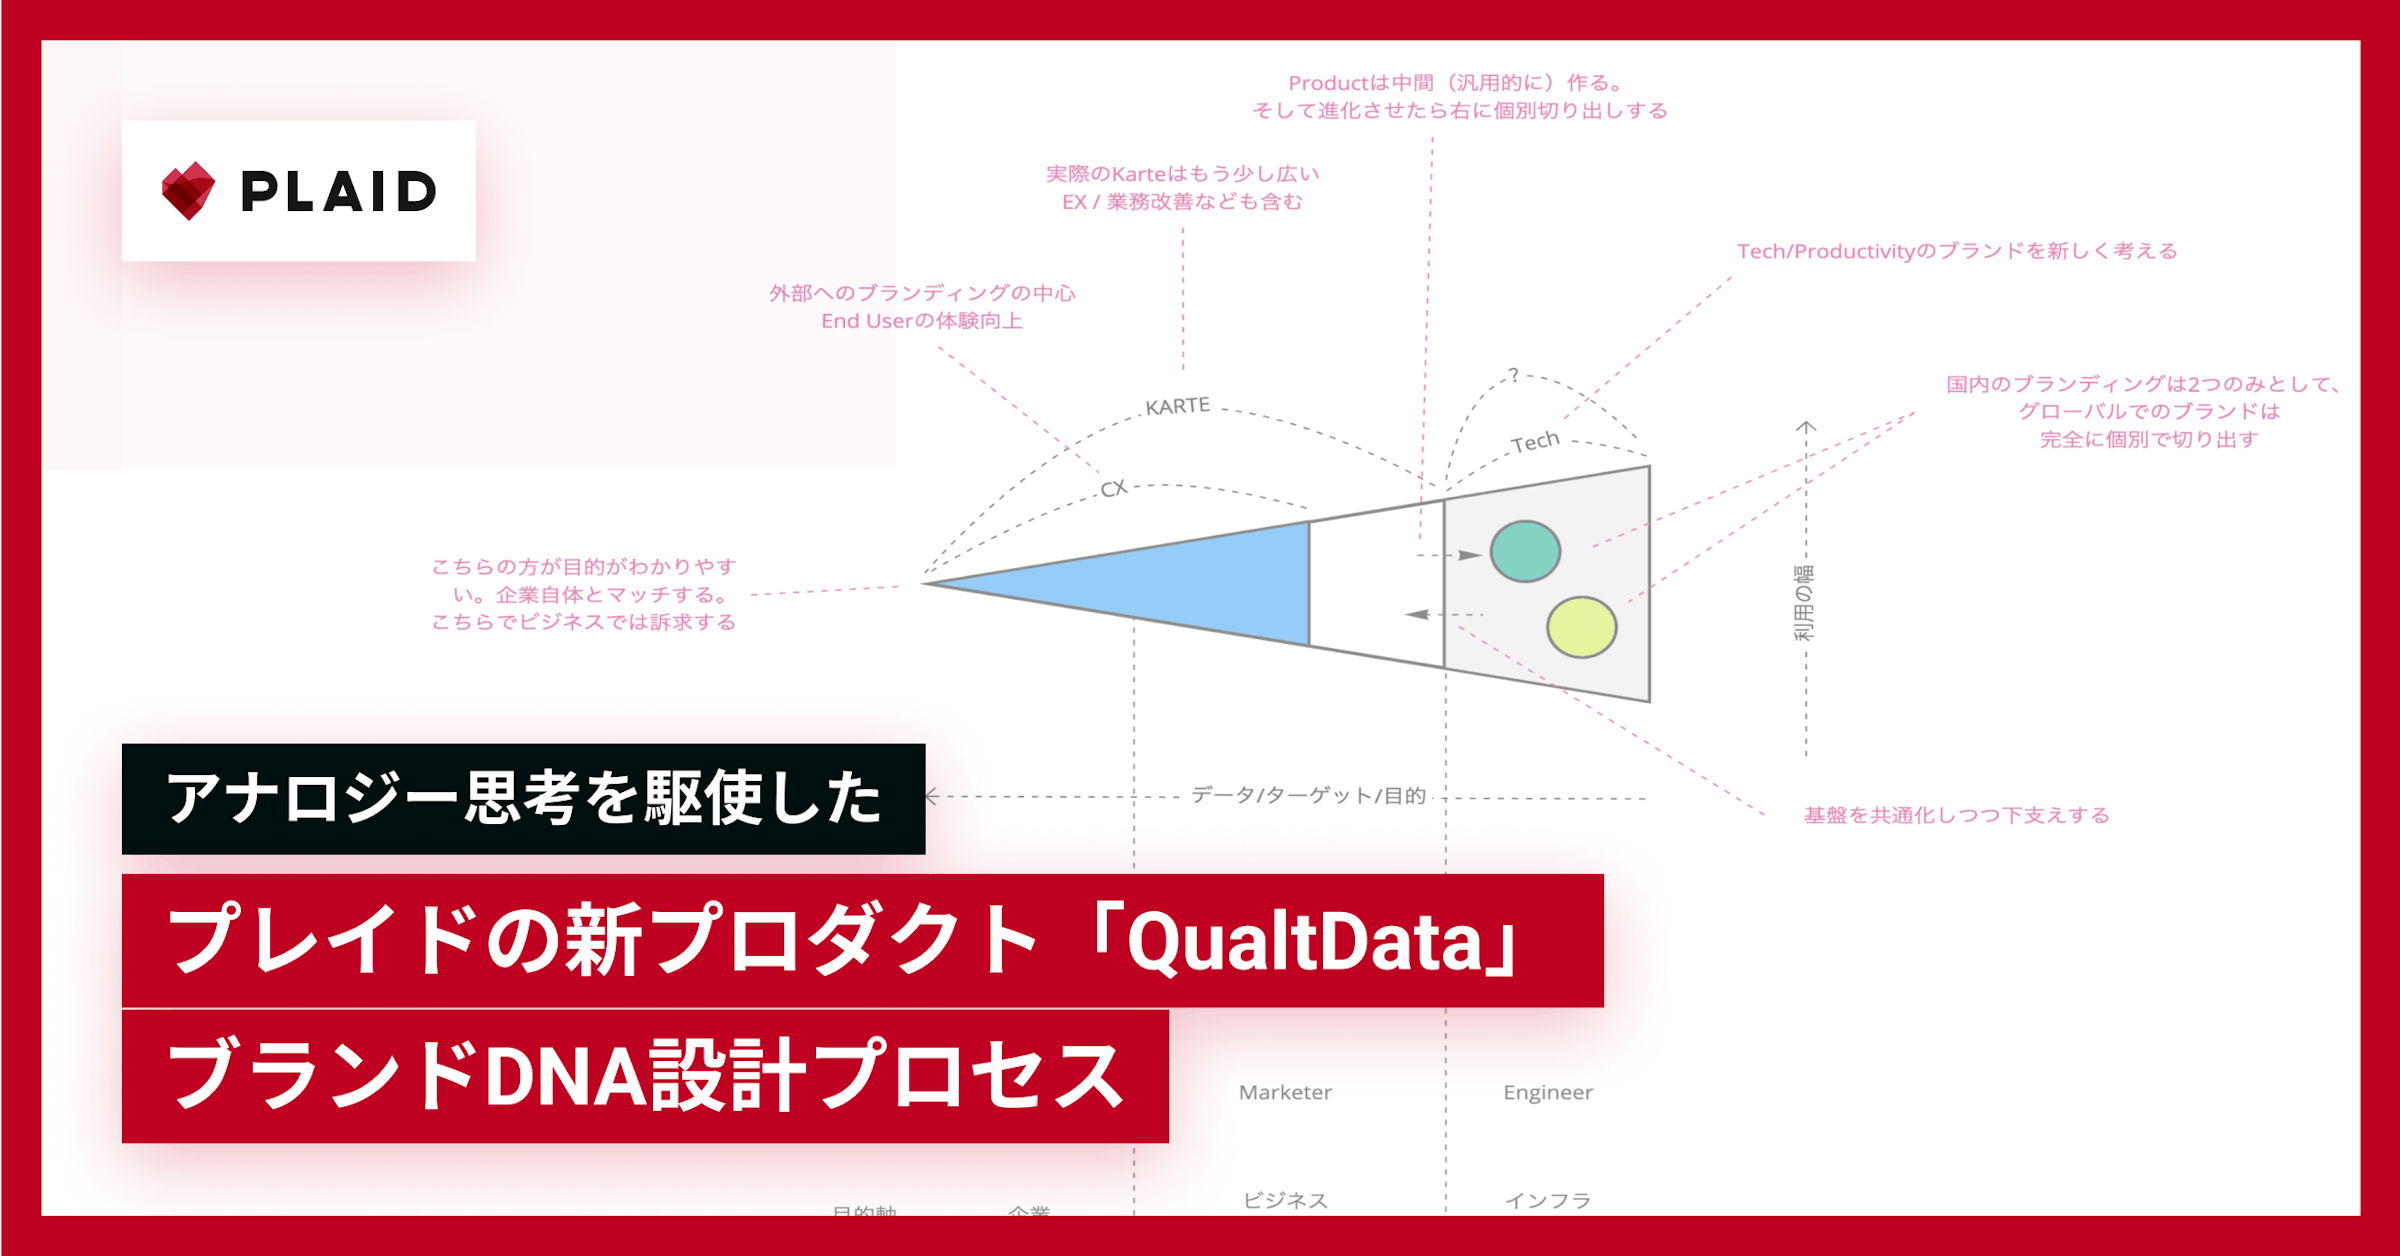 アナロジー思考を駆使したプレイドの新プロダクト「QualtData」ブランドDNA設計プロセスのサムネイル画像